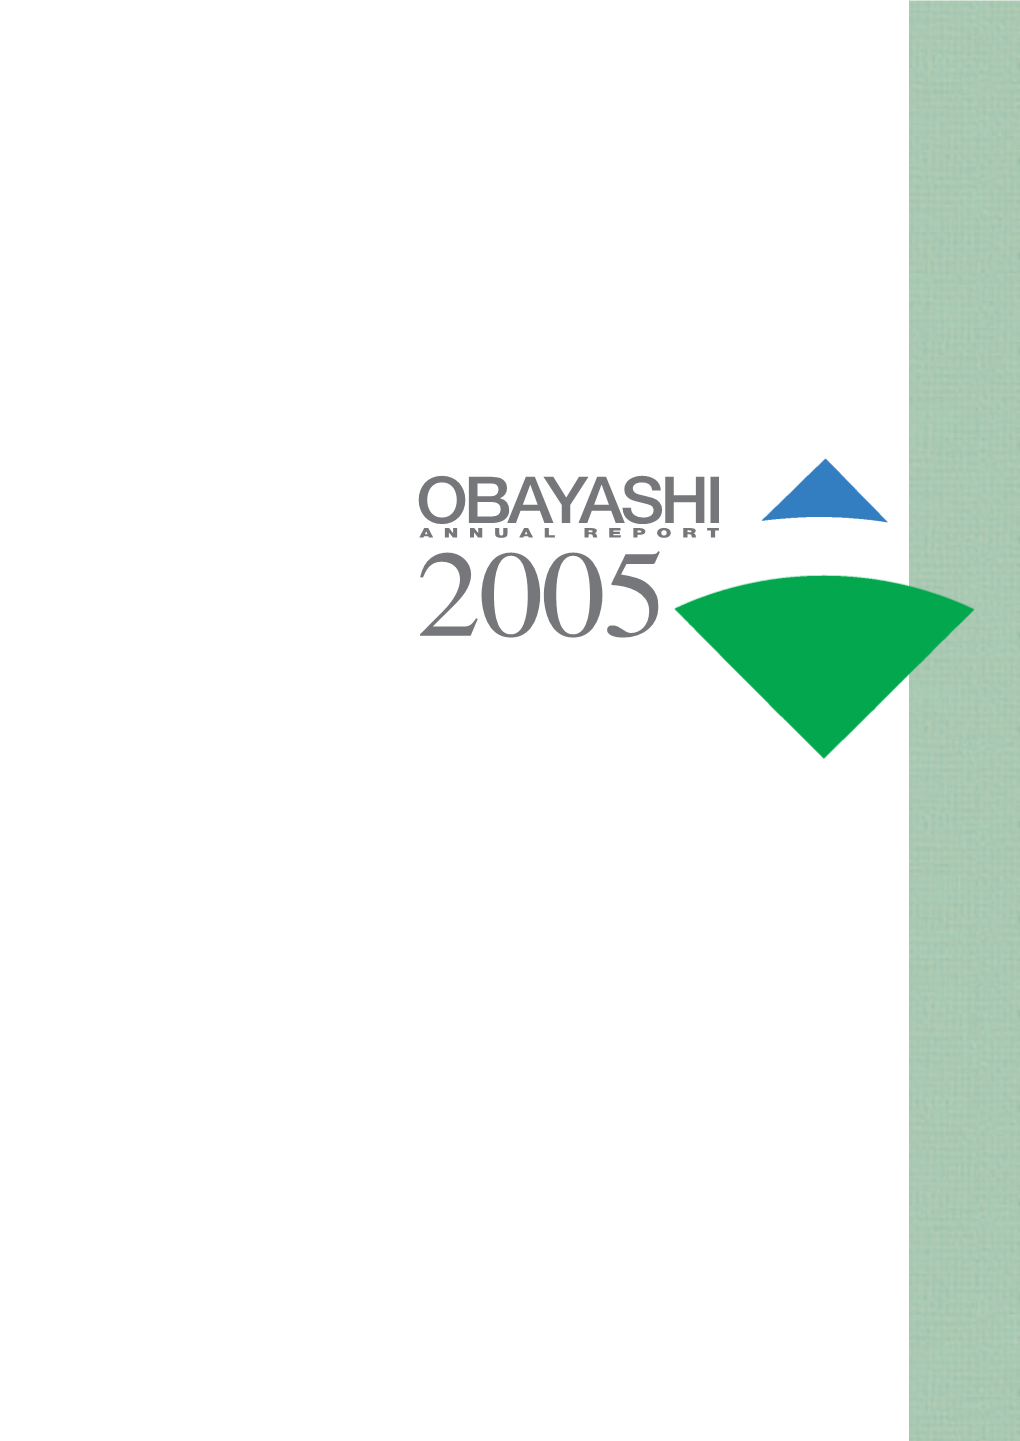 OBAYASHI ANNUAL REPORT 2005 Corporate Profile